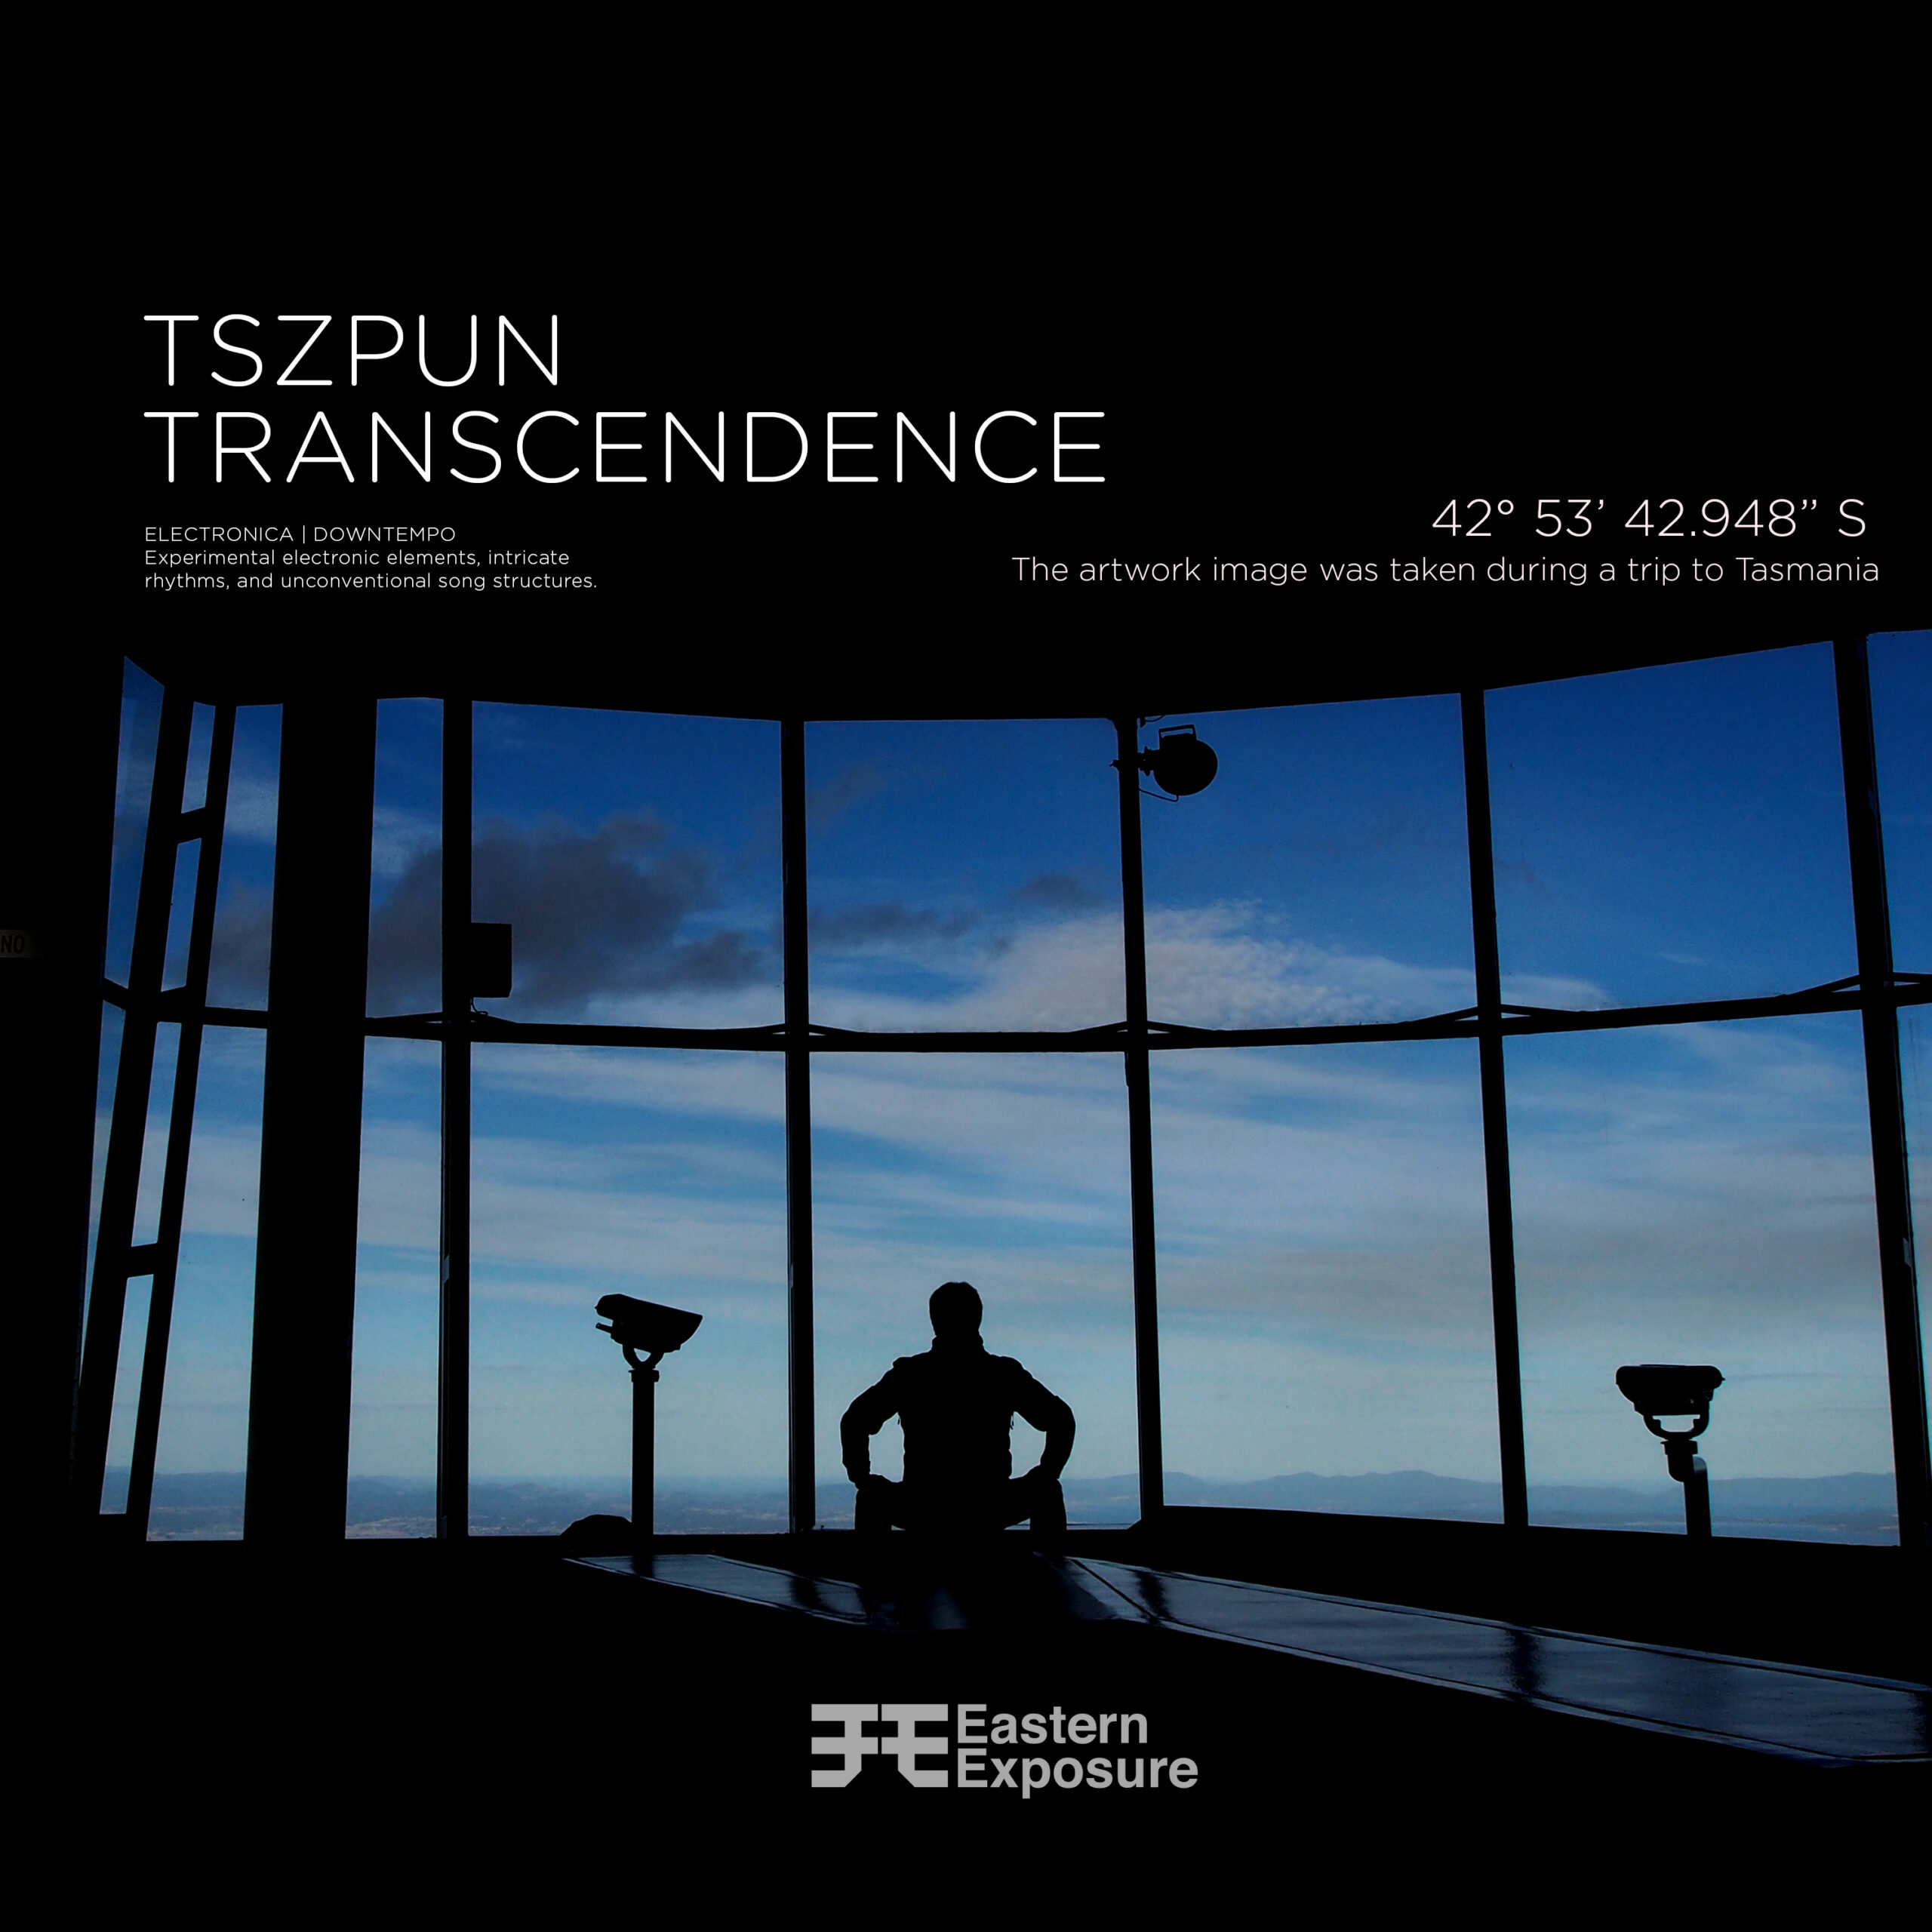 sleeve artwork of Transcendence by Tszpun.